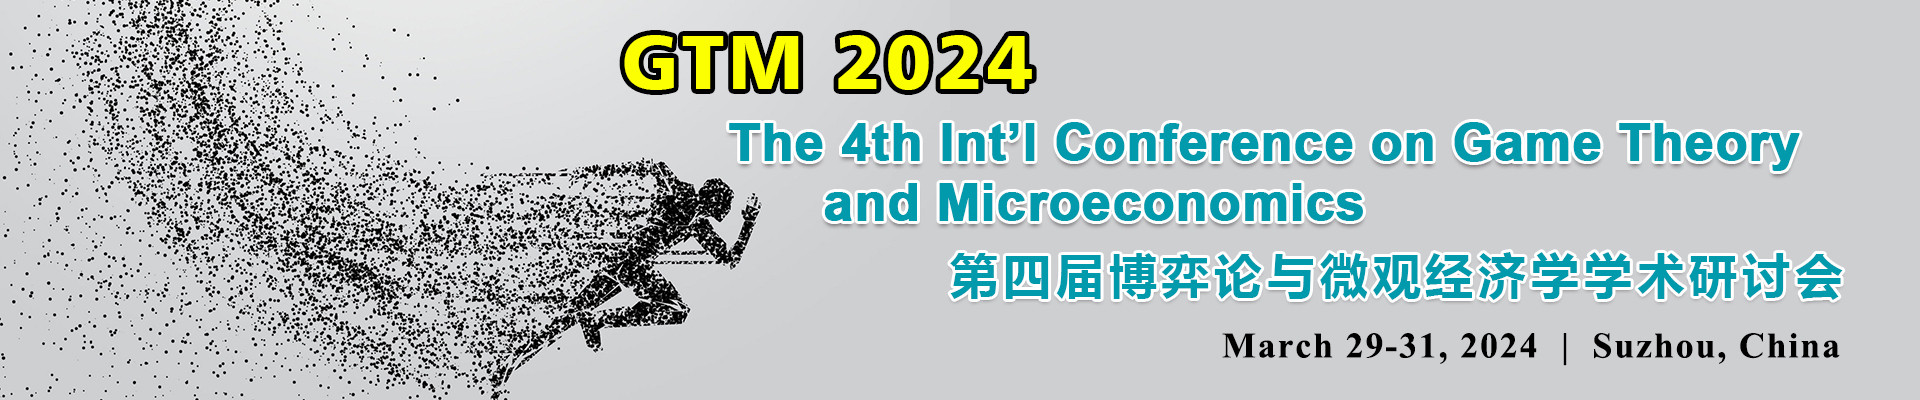 第四届博弈论与微观经济学学术研讨会(GTM 2024)